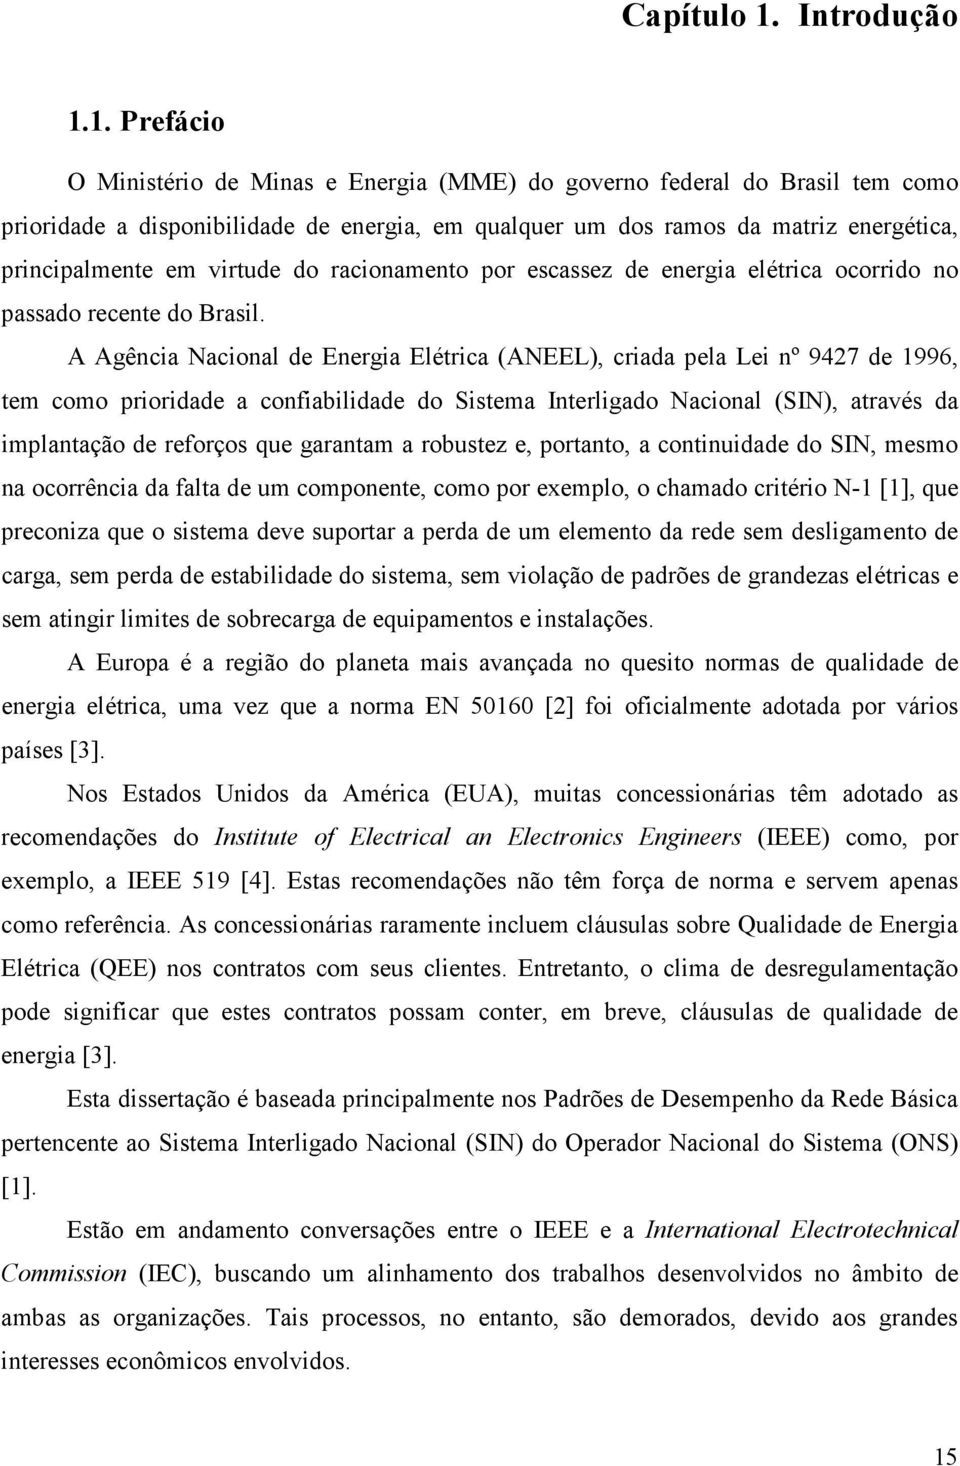 1. Prefácio O Ministério de Minas e Energia (MME) do governo federal do Brasil tem como prioridade a disponibilidade de energia, em qualquer um dos ramos da matriz energética, principalmente em